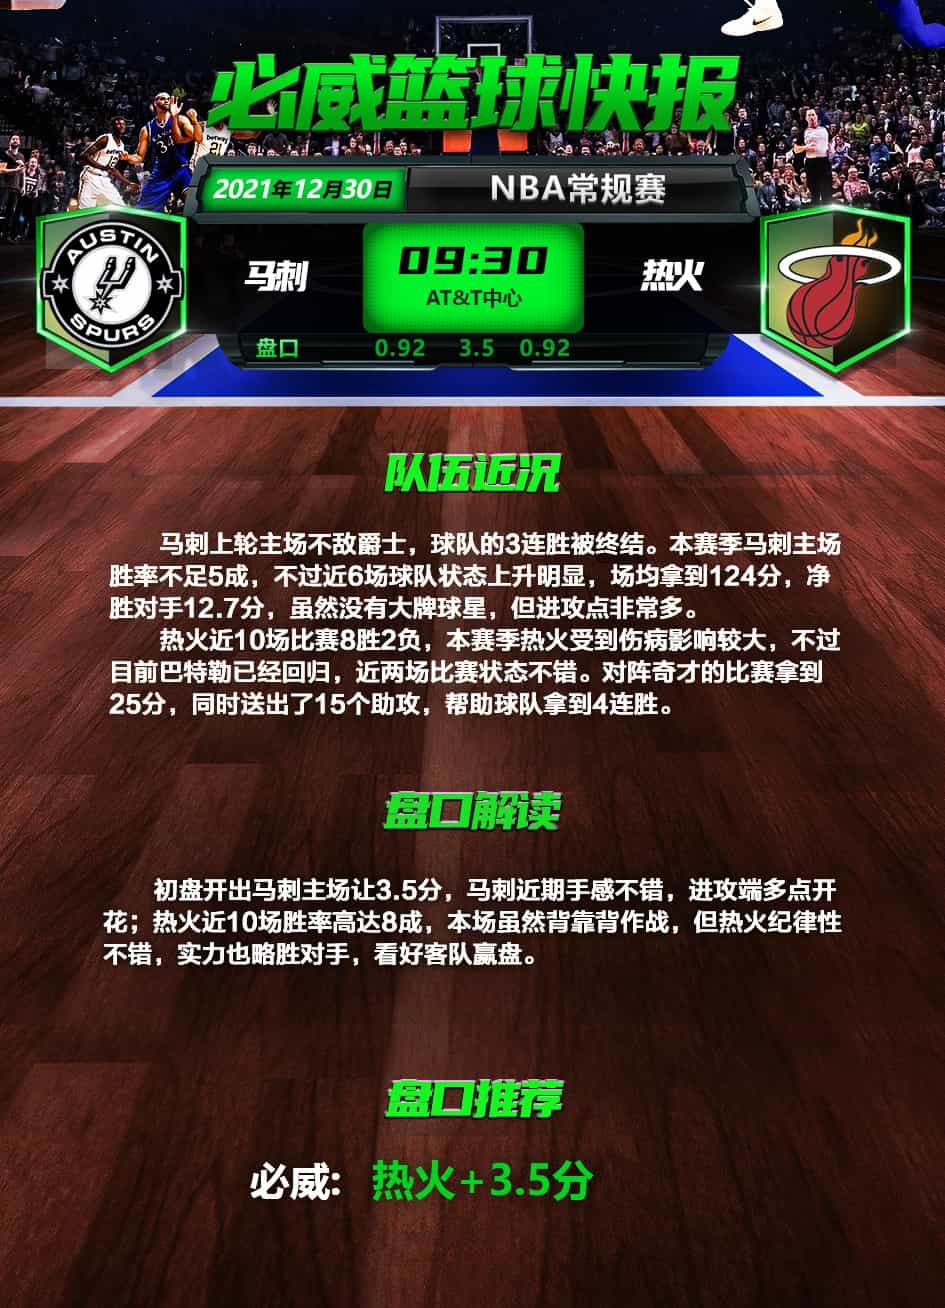 必威篮球官方报道新闻图